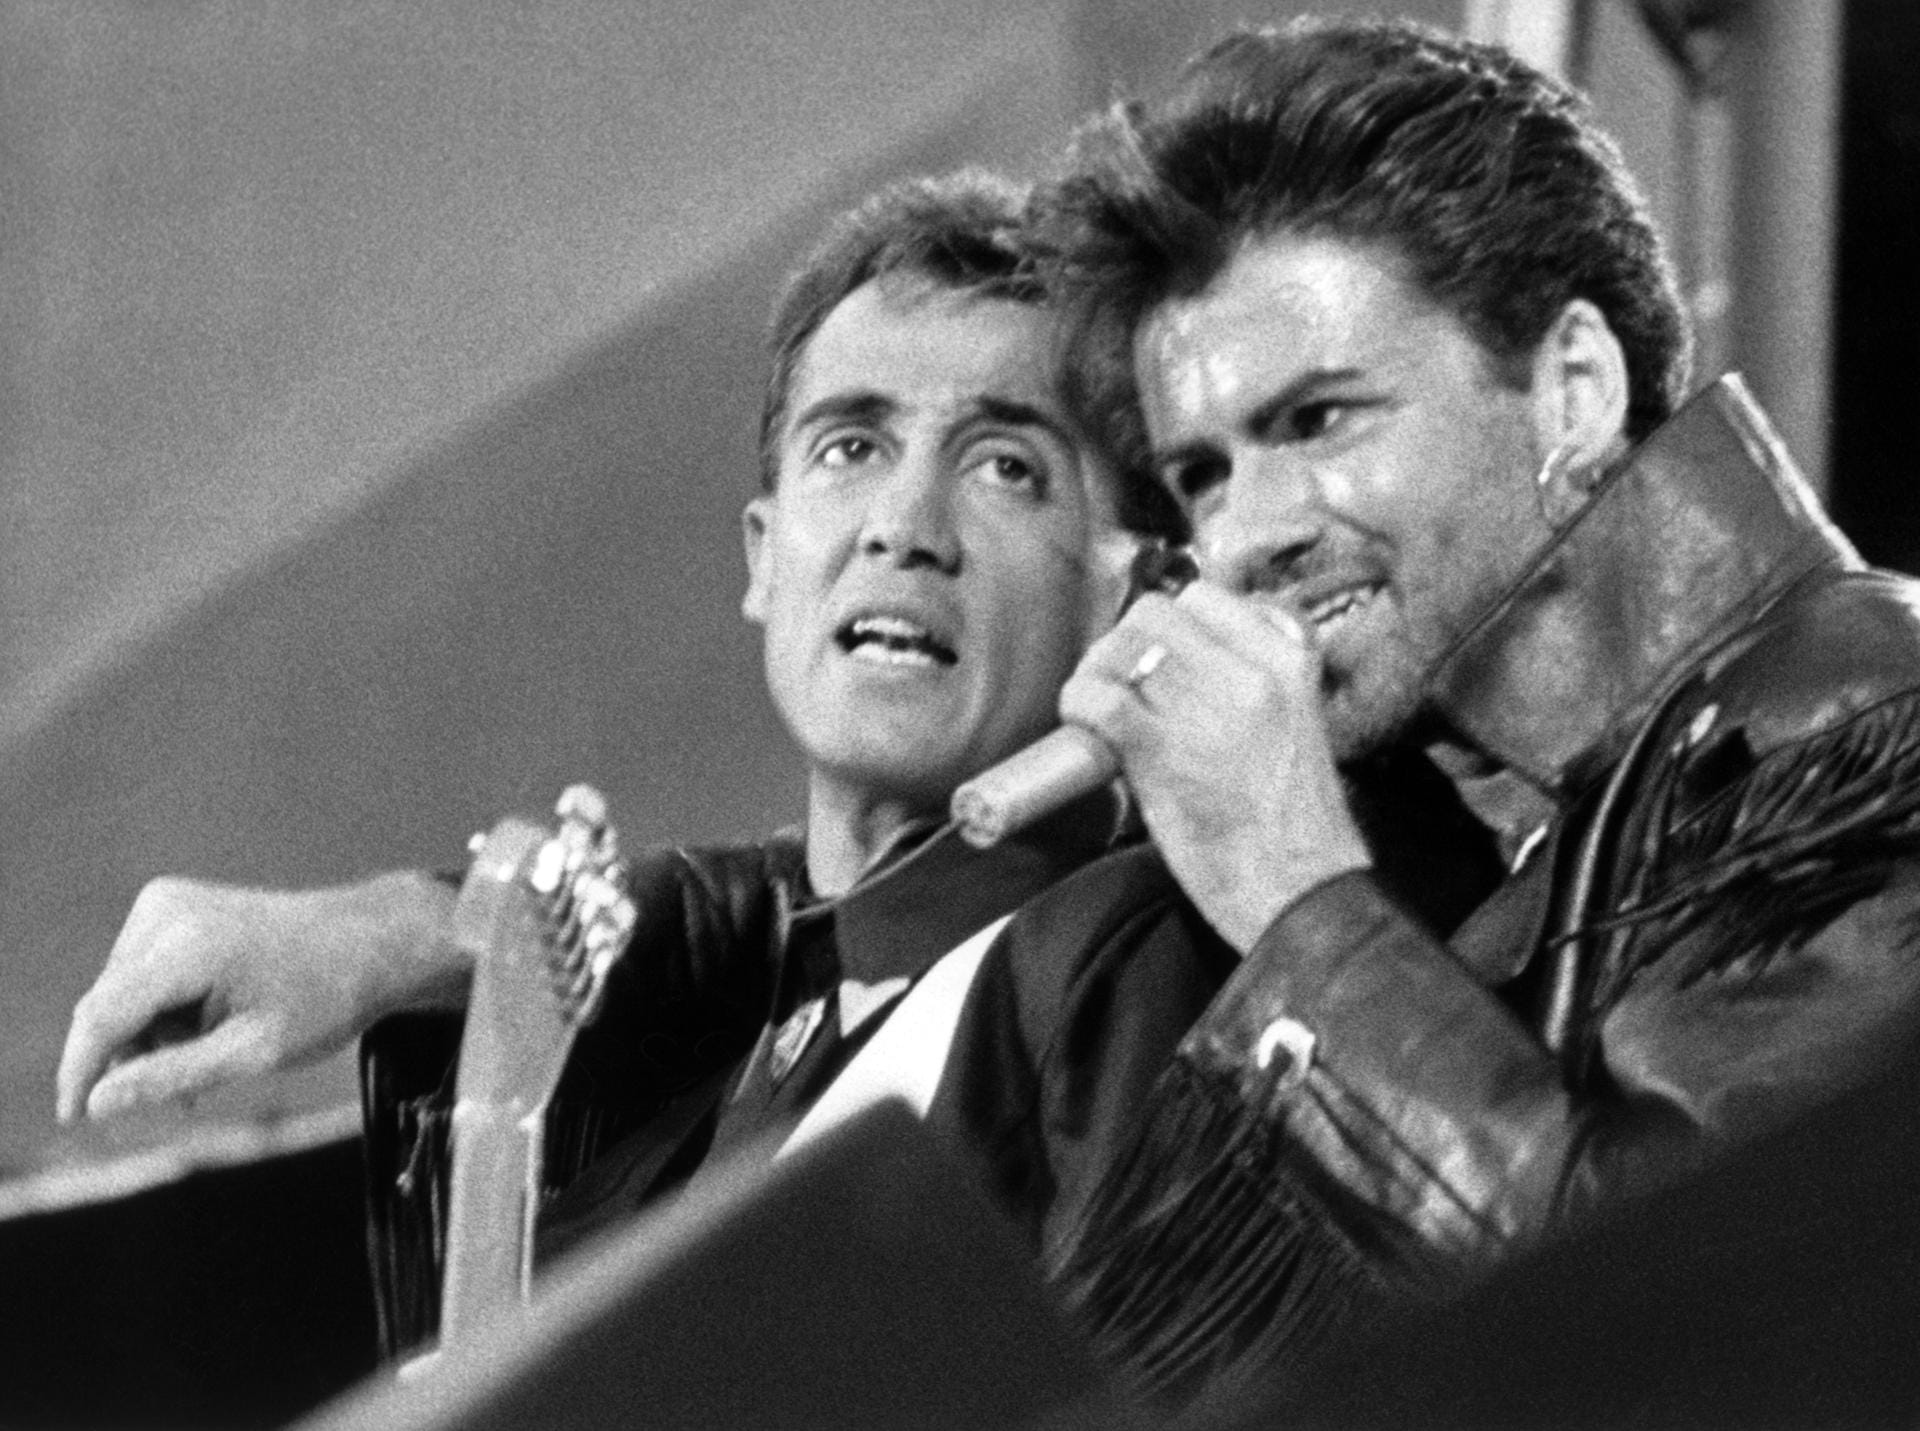 Andrew Ridgeley und George Michael - aufgenommen am 28.06.1986 während ihres Abschiedskonzerts im ausverkauften Wembley Stadion in London.